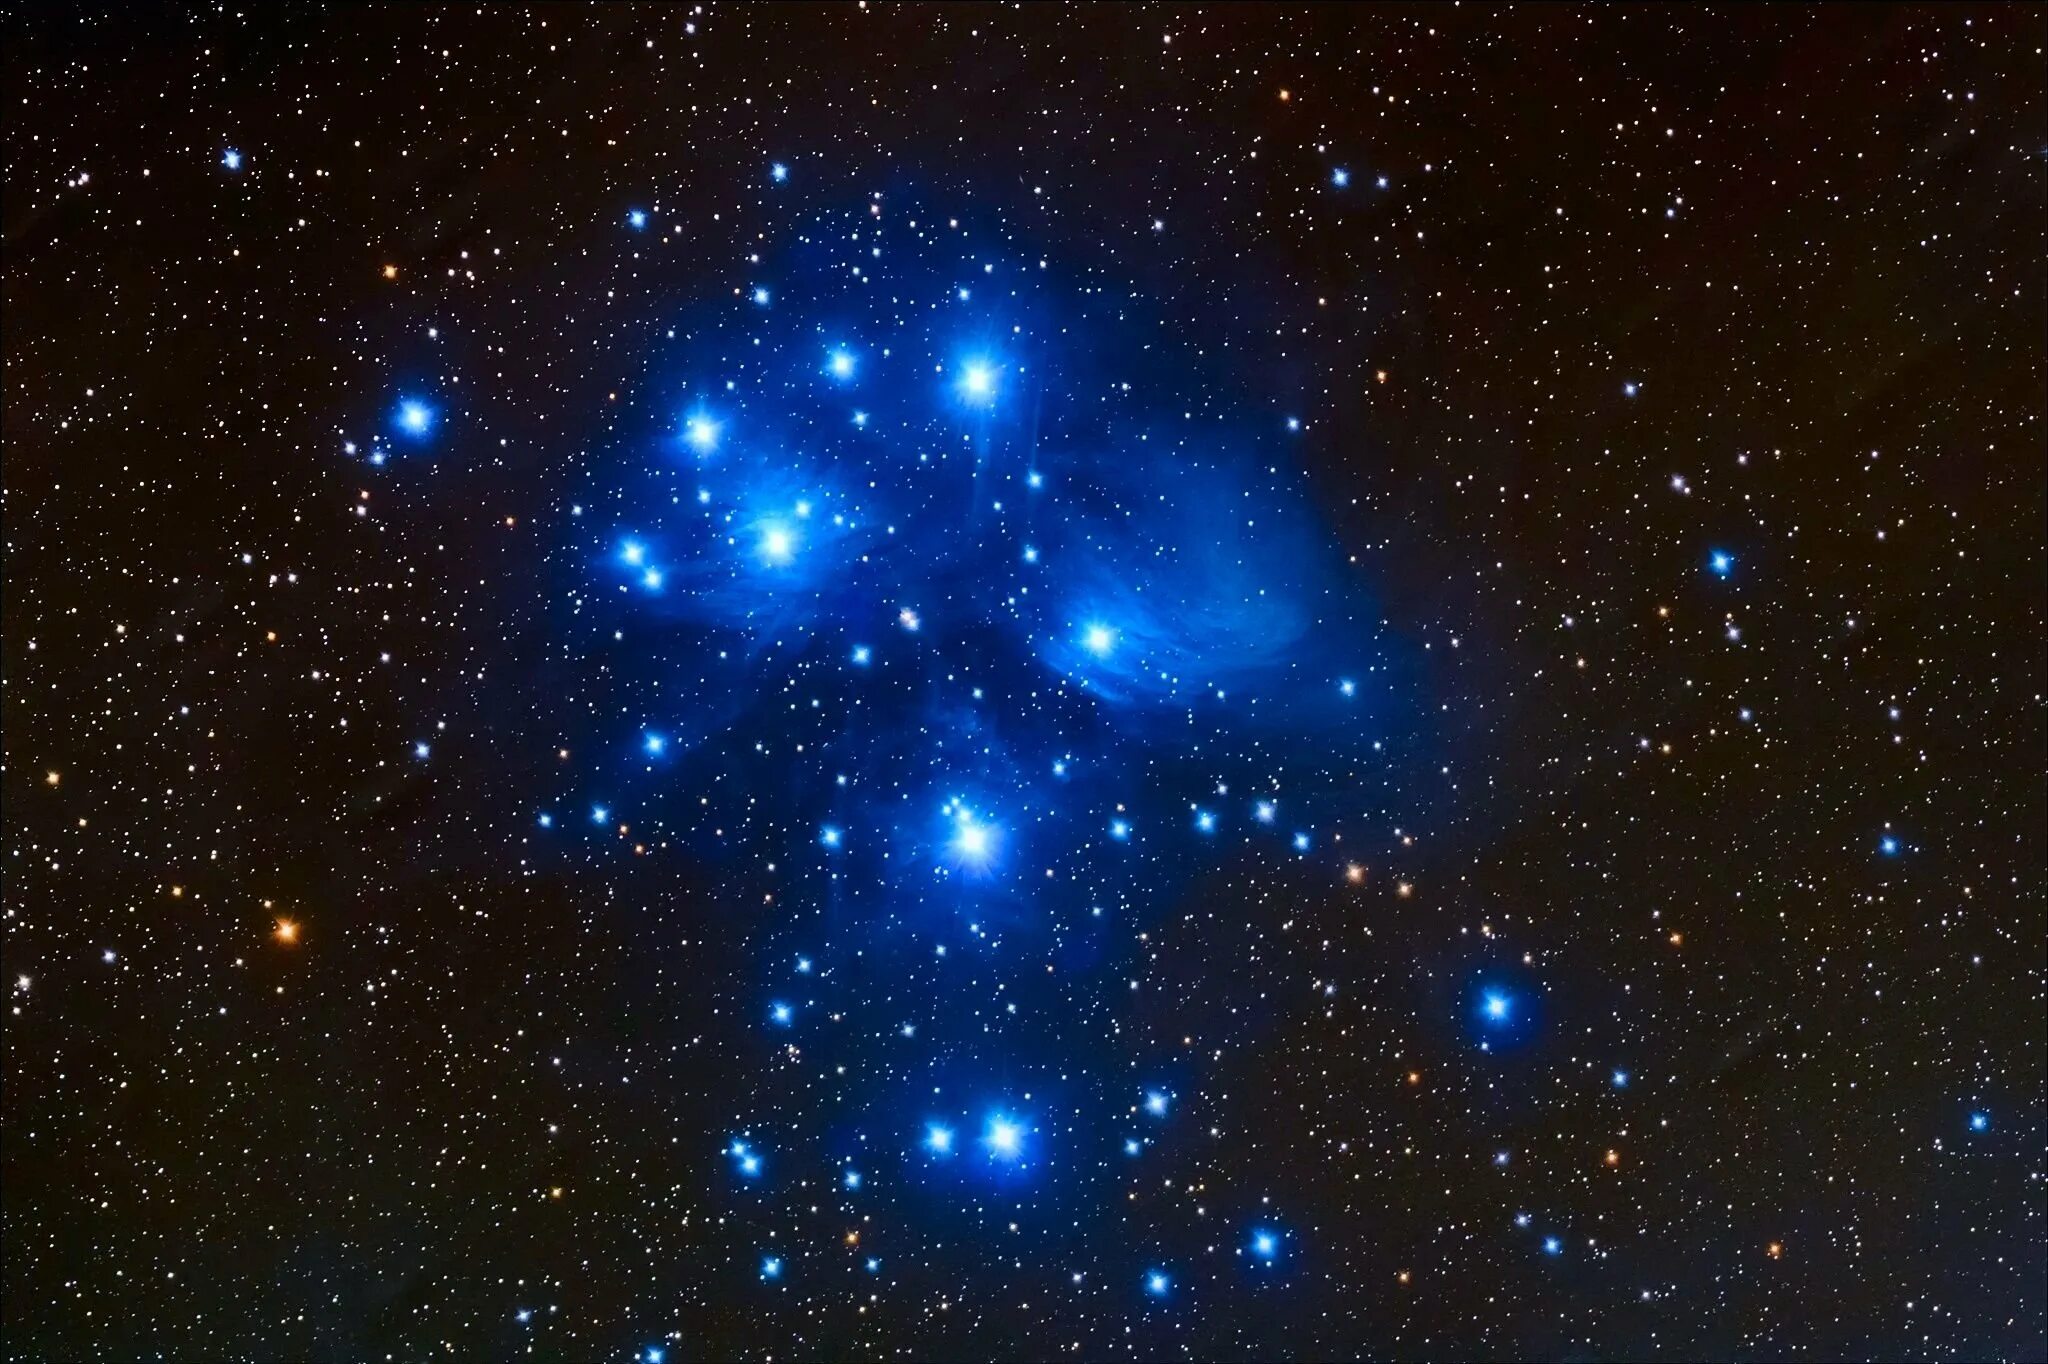 Созвездие Плеяд Созвездие Плеяды. Звезда атлас Плеяды. Галактика Плеяды. Отражательные туманности в созвездии Плеяды. Звездное скопление в созвездии